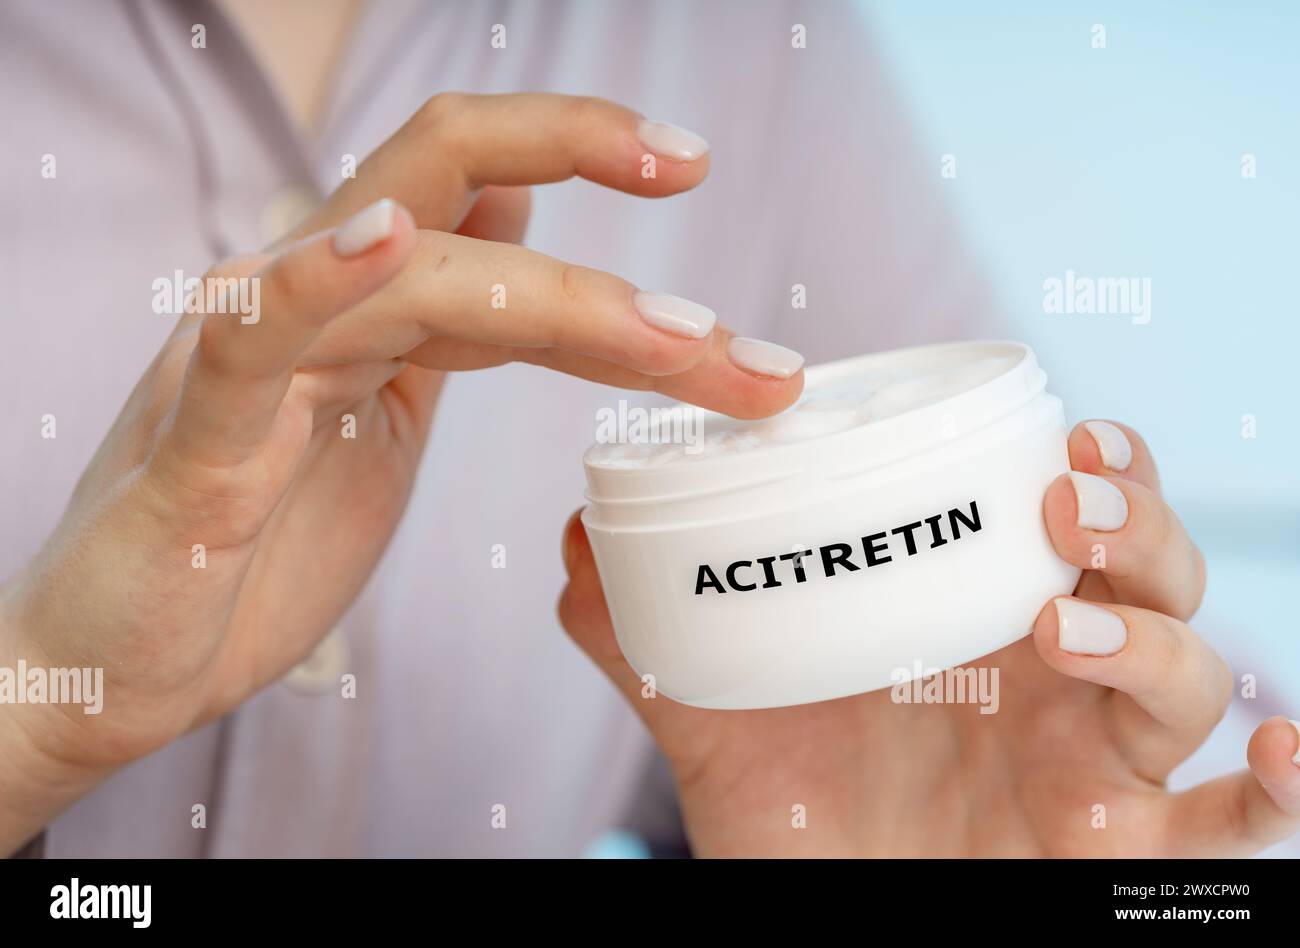 Acitretin-medizinische Creme, konzeptuelles Bild. Eine Retinoid-Creme zur Behandlung schwerer Psoriasis, indem sie das Wachstum von Hautzellen verlangsamt und Entzündungen reduziert. Stockfoto